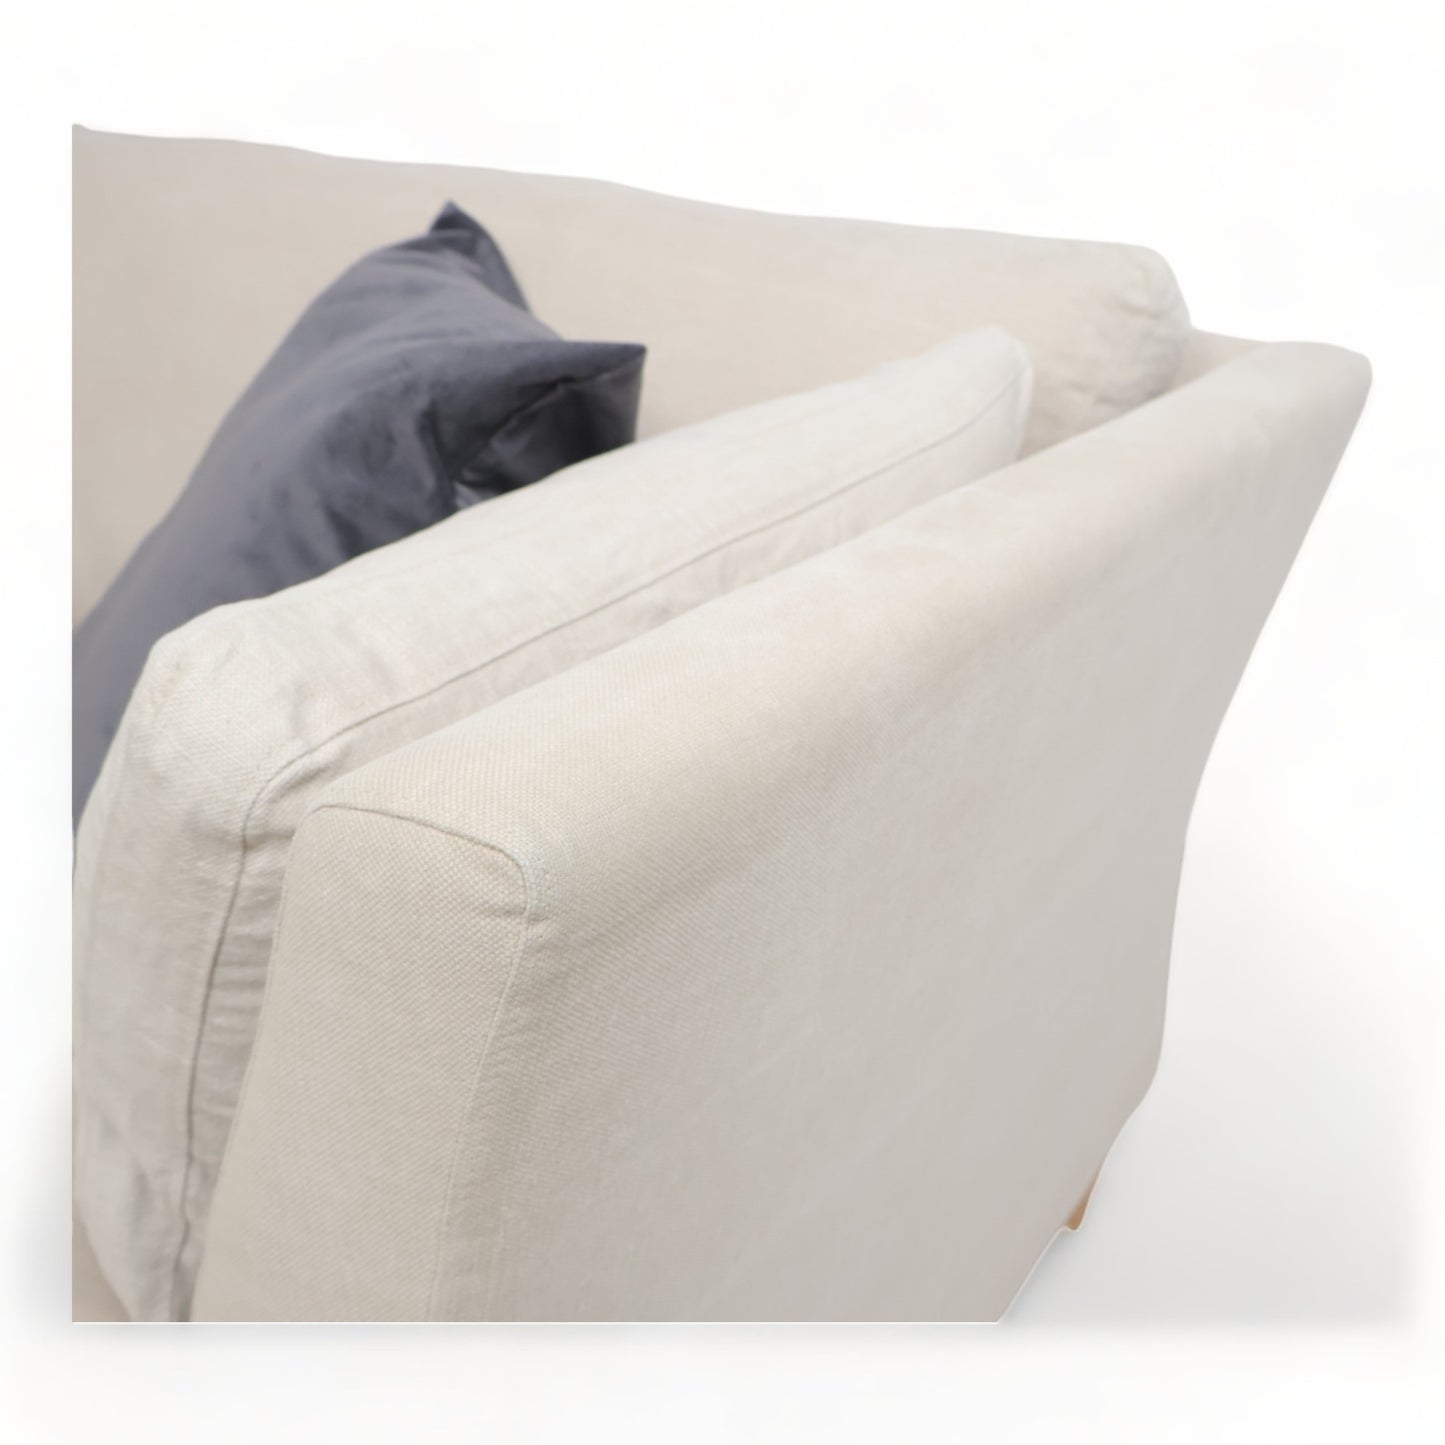 Nyrenset | Balder 3-seter sofa fra Home&Cottage